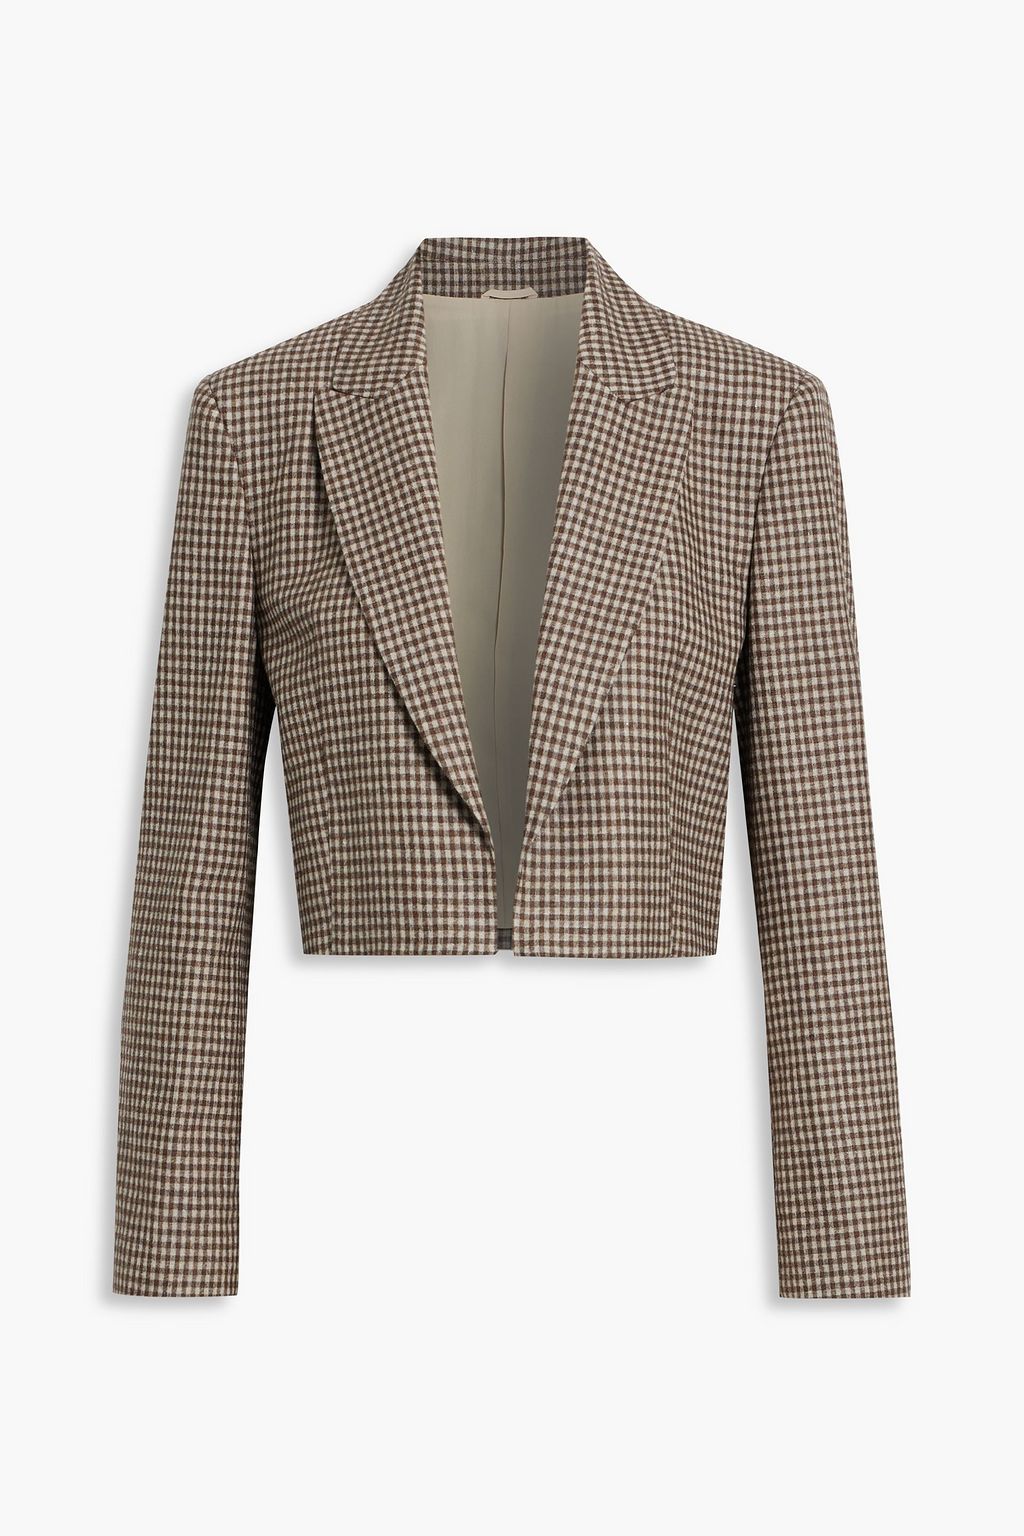 Укороченный пиджак в клетку из шерсти, шелка и льна BRUNELLO CUCINELLI, коричневый цена и фото